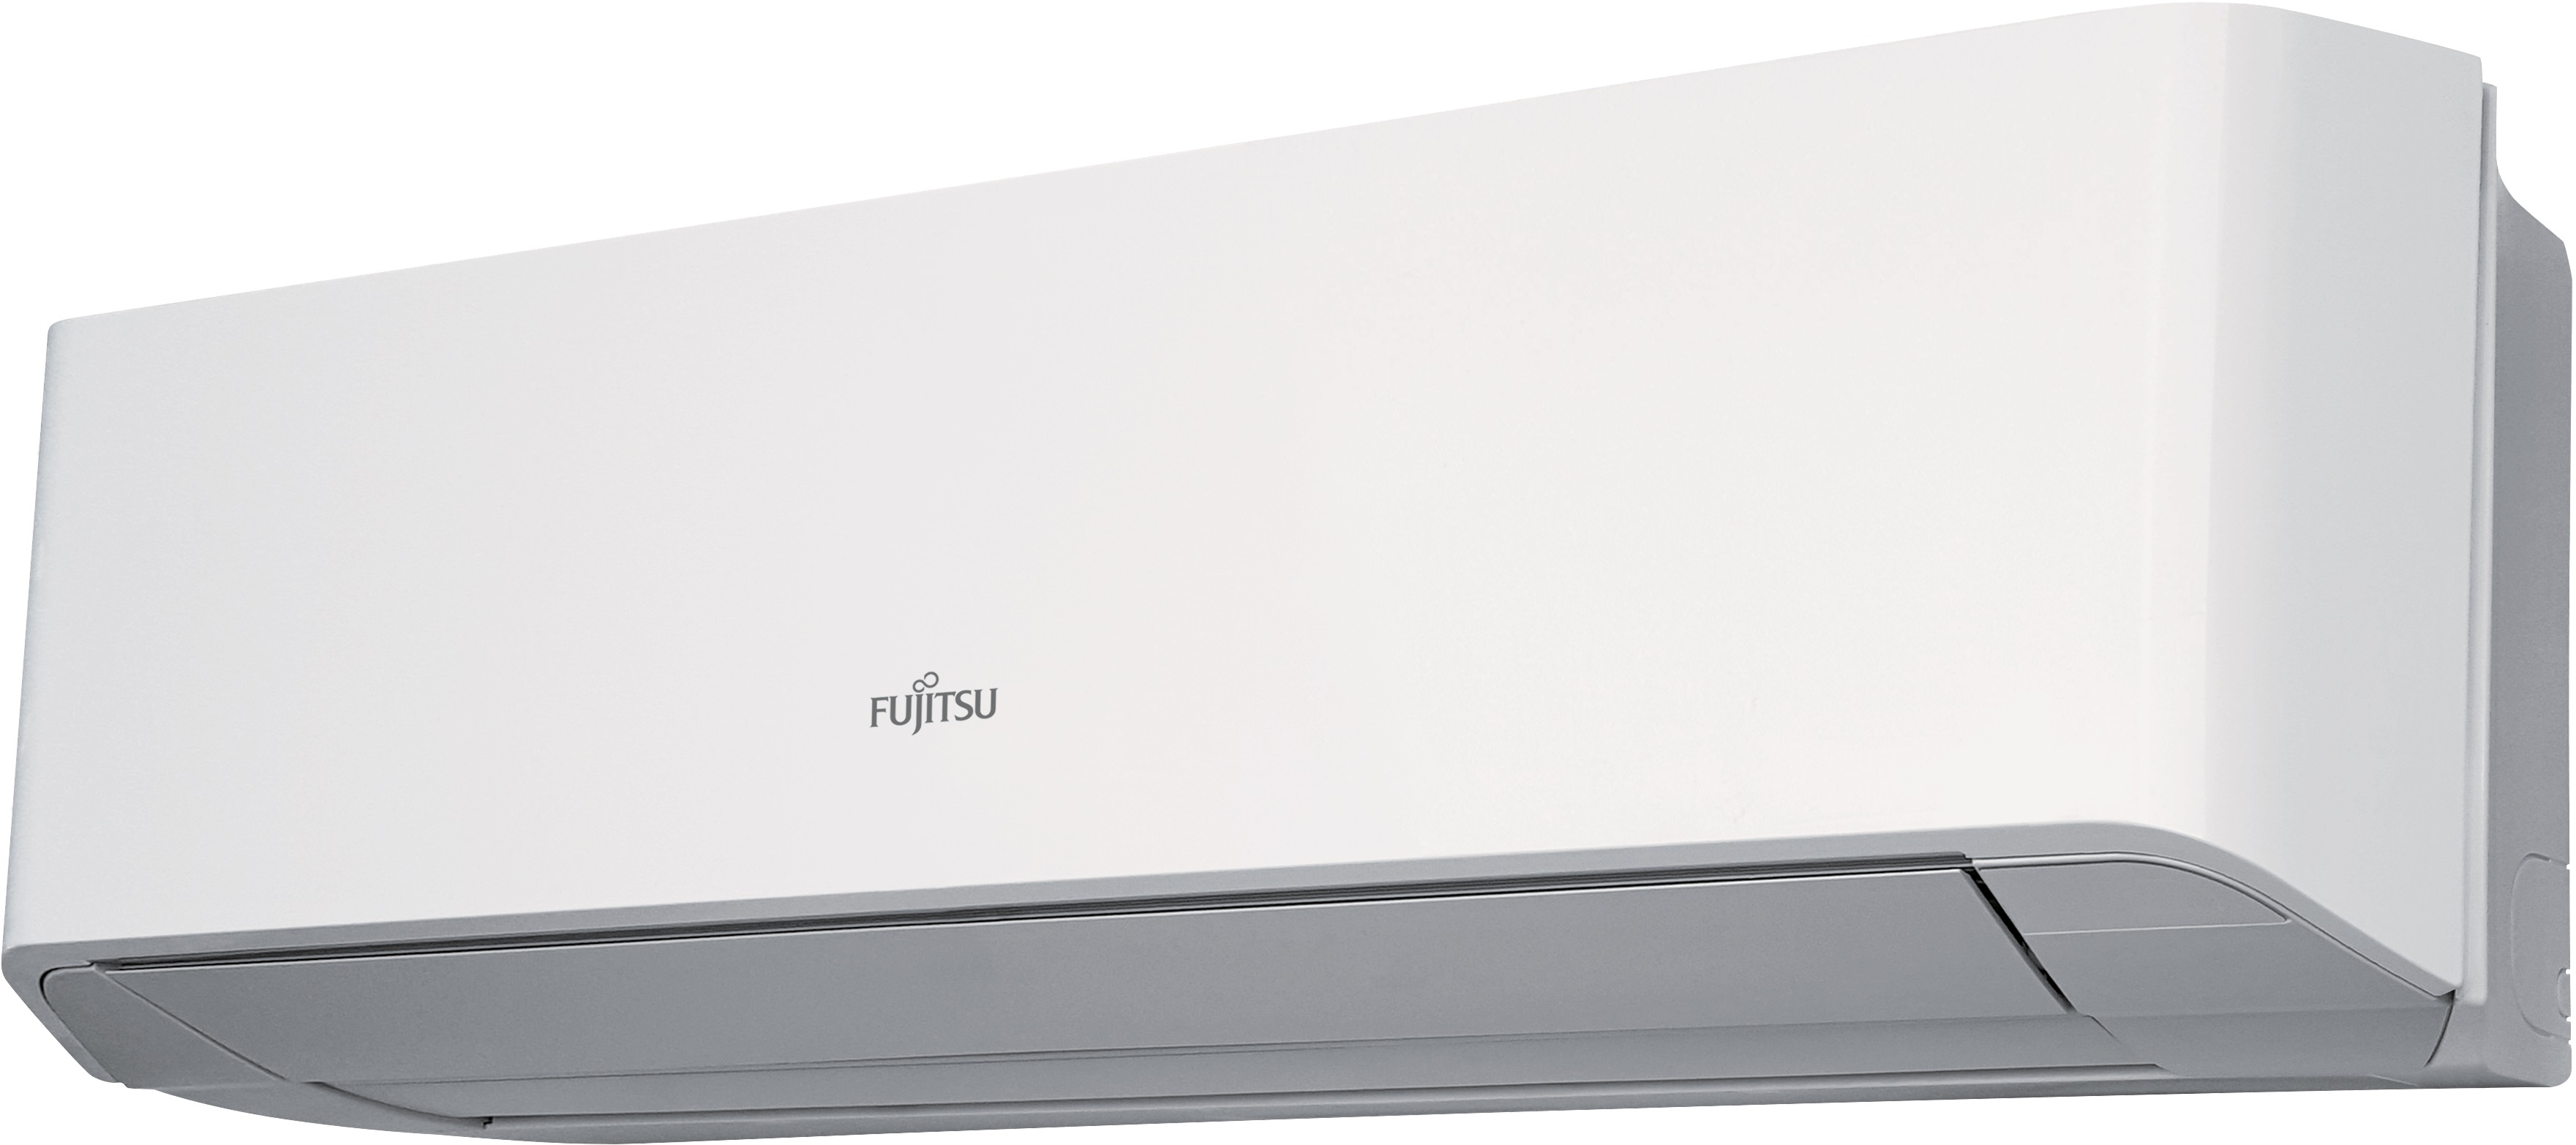 Fujitsu klima uređaj zidni inverter ASYG14LMCE / AOYG14LMCE